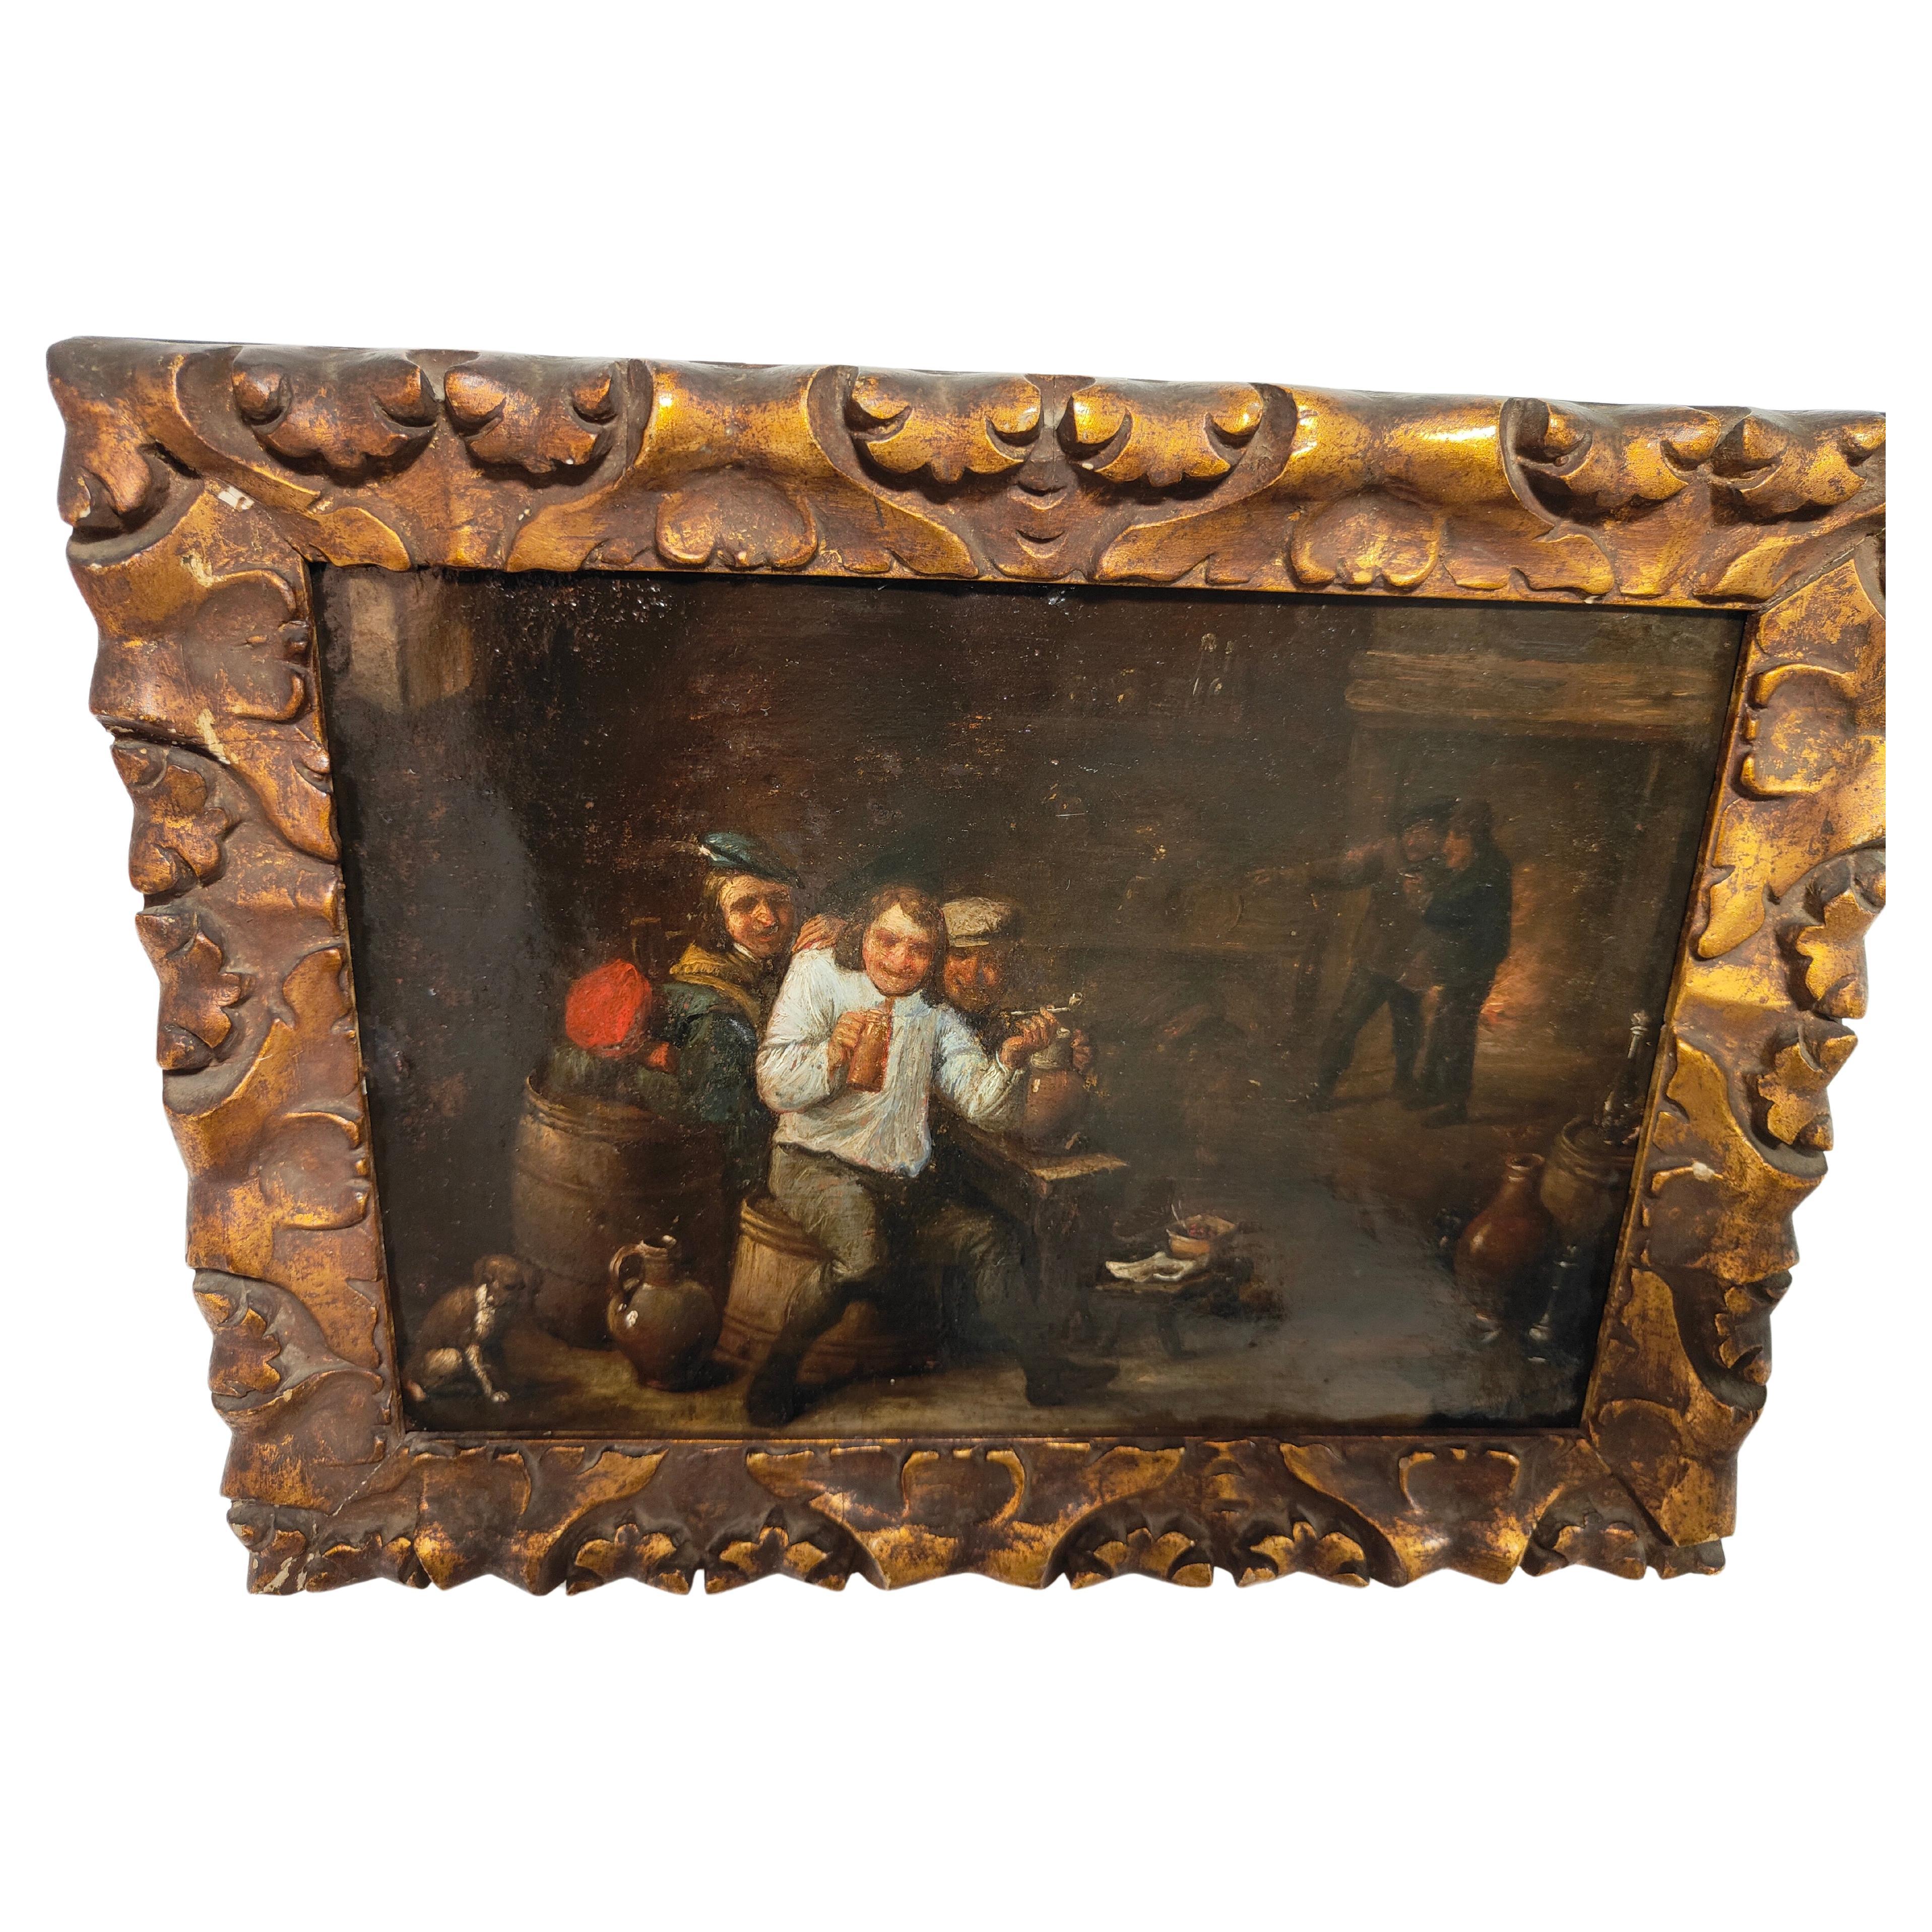  Öl auf Kupfer im Stil von David Teniers, charmantes Ölgemälde aus dem 17. Jahrhundert